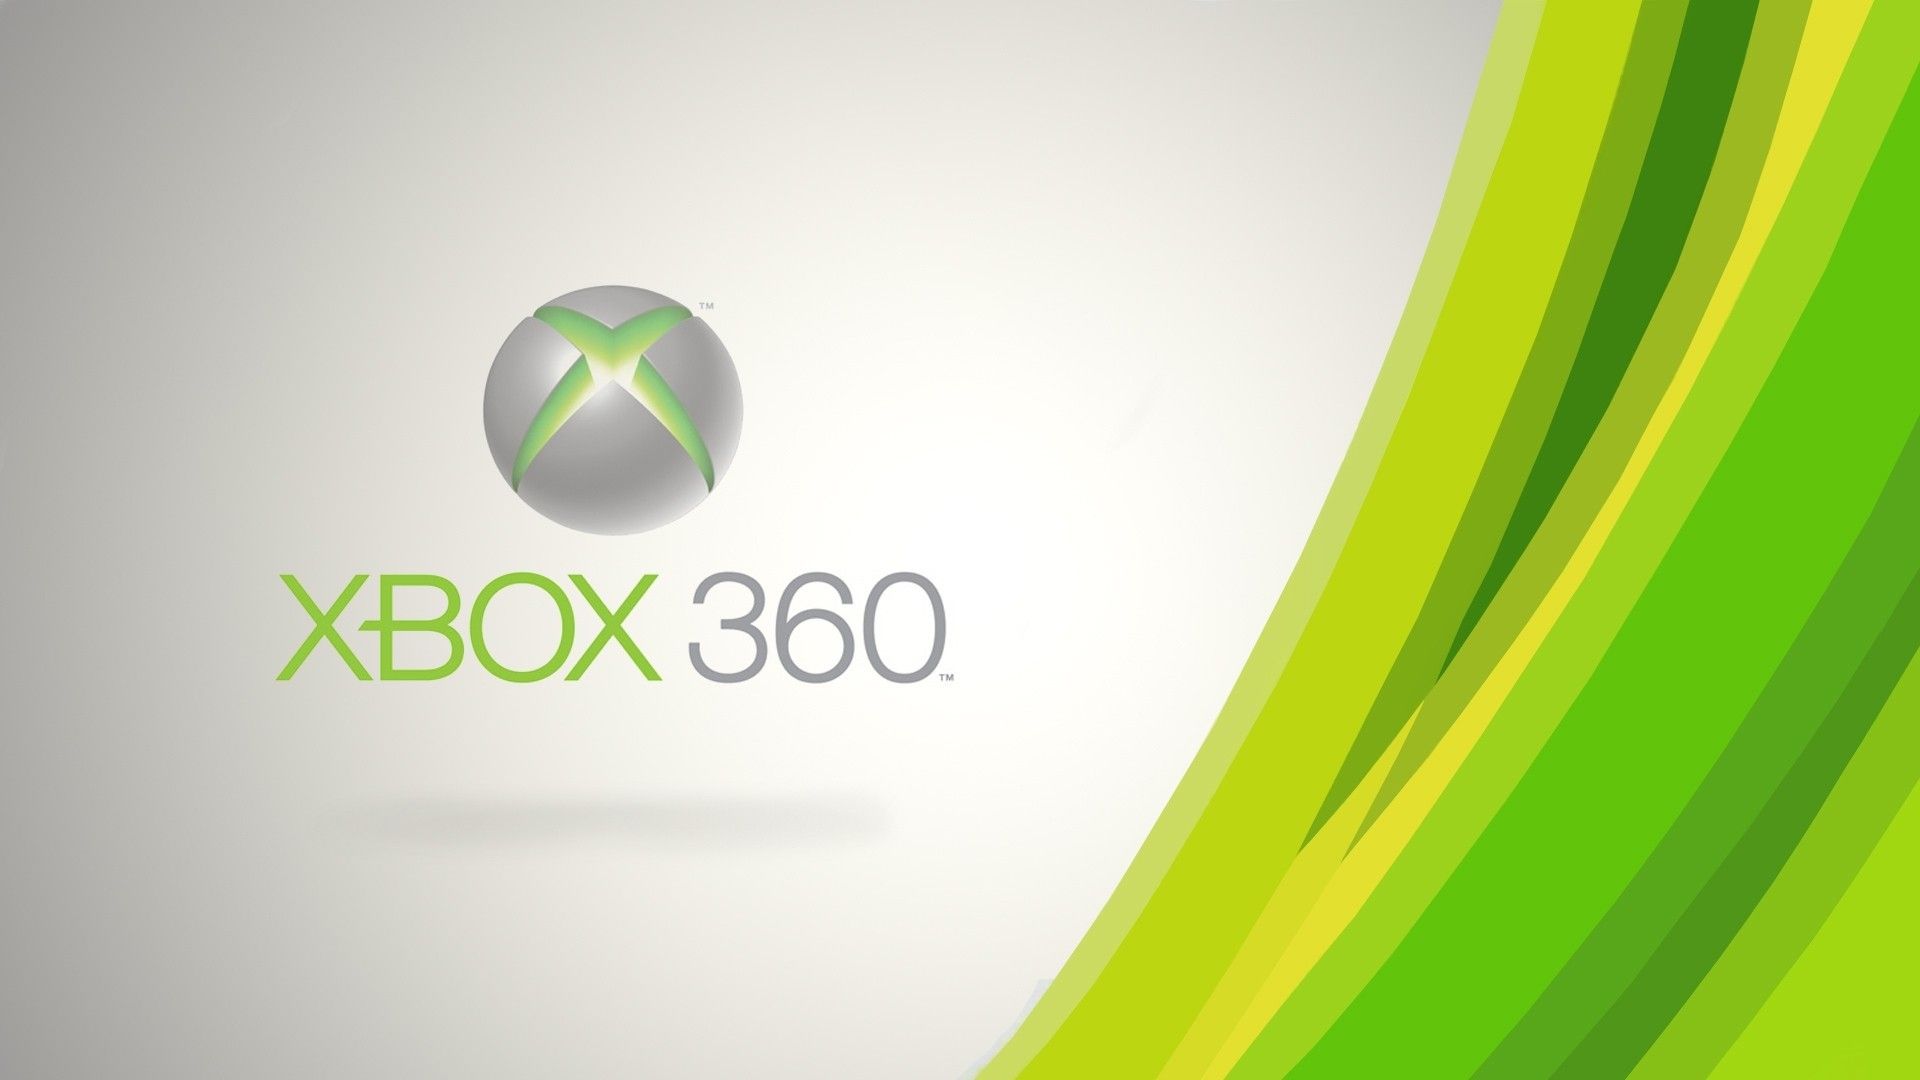 Jogos Torrent 360  Download de Jogos Torrent: Minecraft Xbox 360